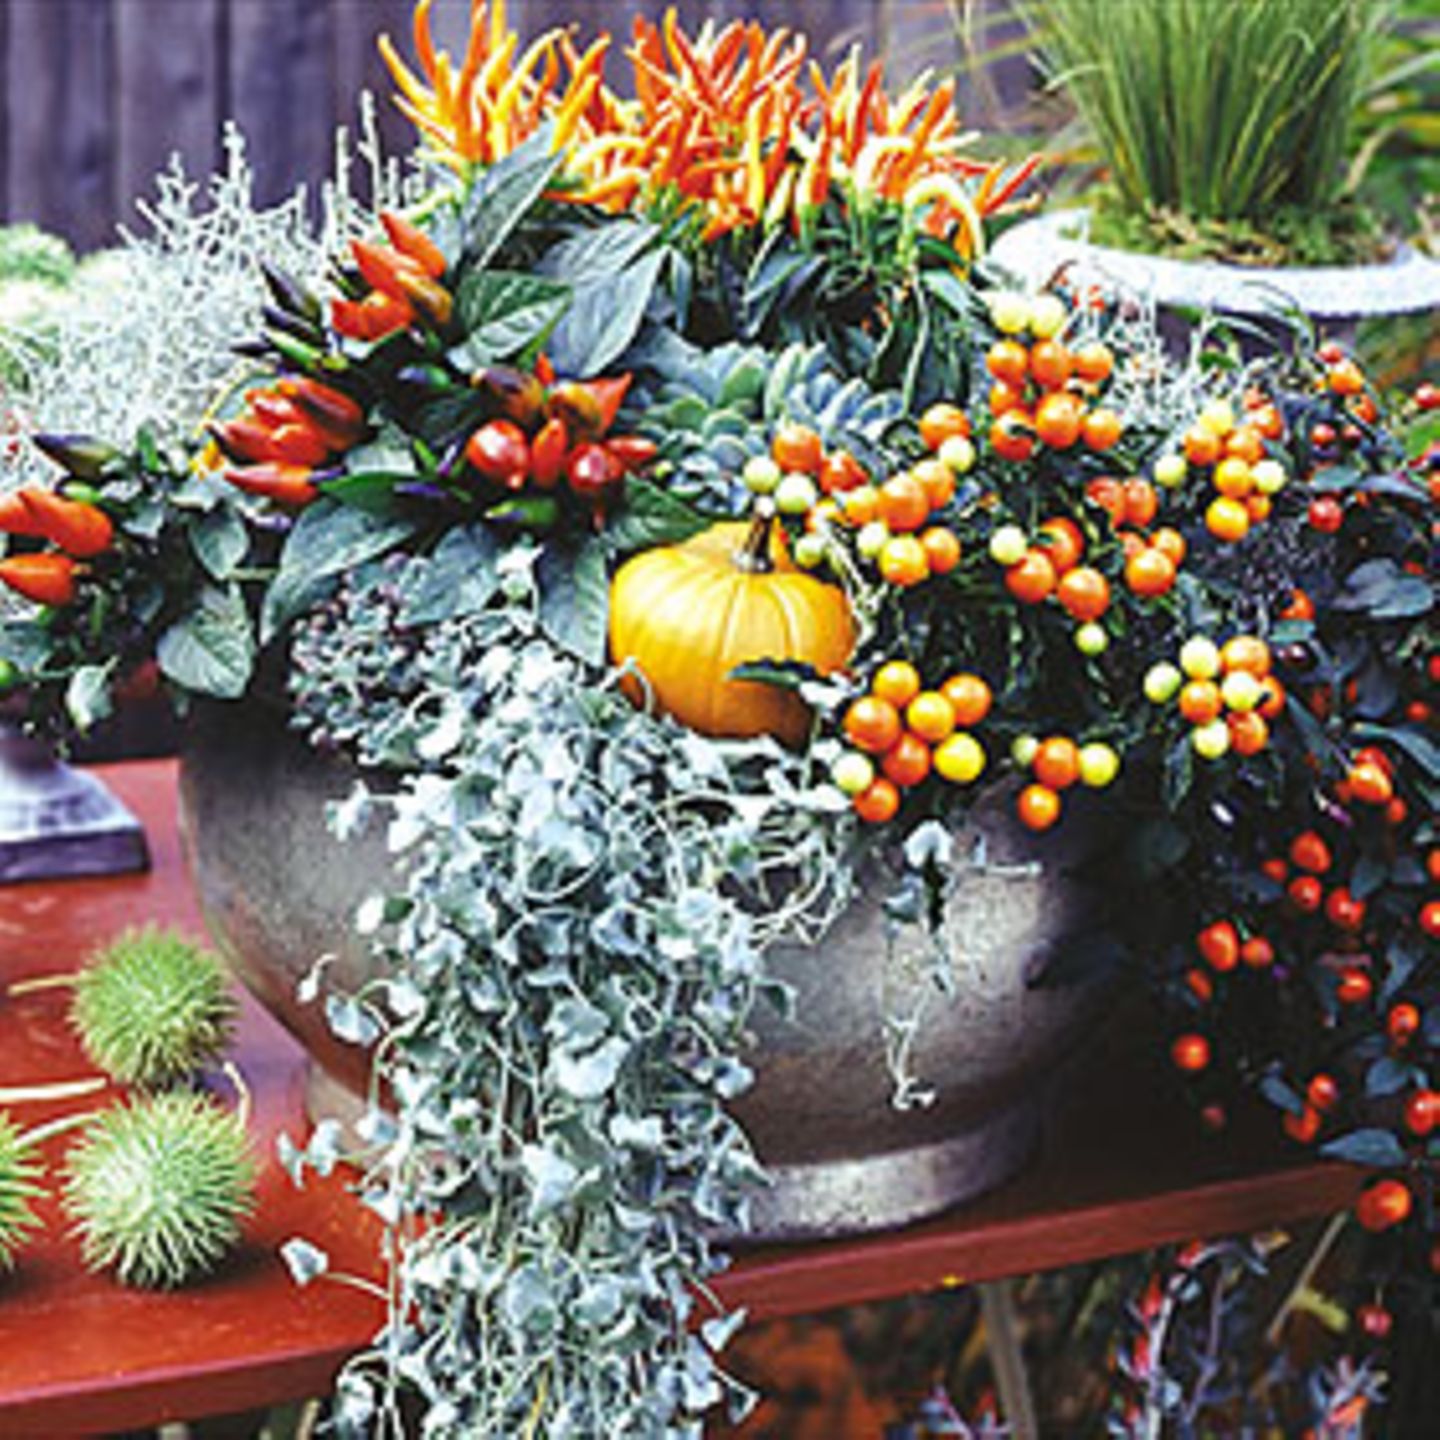 Prachtmischung Hier glühen die Rot- und Orangetöne um die Wette. In dem Topf sind Zierpaprika in unterschiedlichen Formen mit Beeren- und Blattschmuckpflanzen vereint.